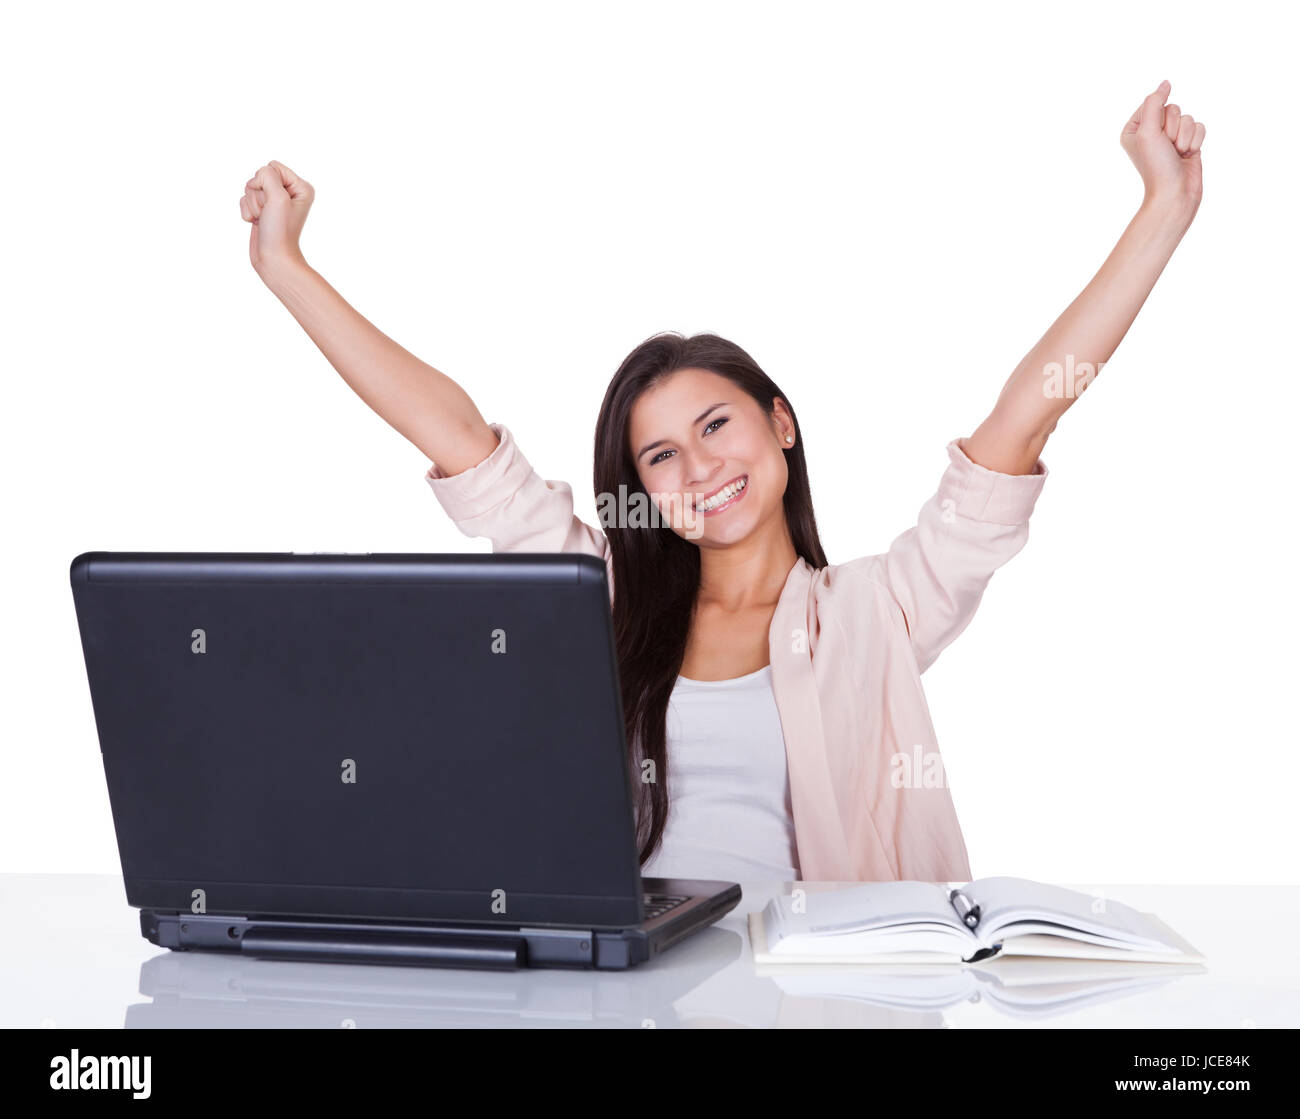 Продвинутые женщины. Женщина с компьютером. Женщина за компом счастье. Радостная девушка с ноутбуком. Девушка с ноутбуком на белом фоне.